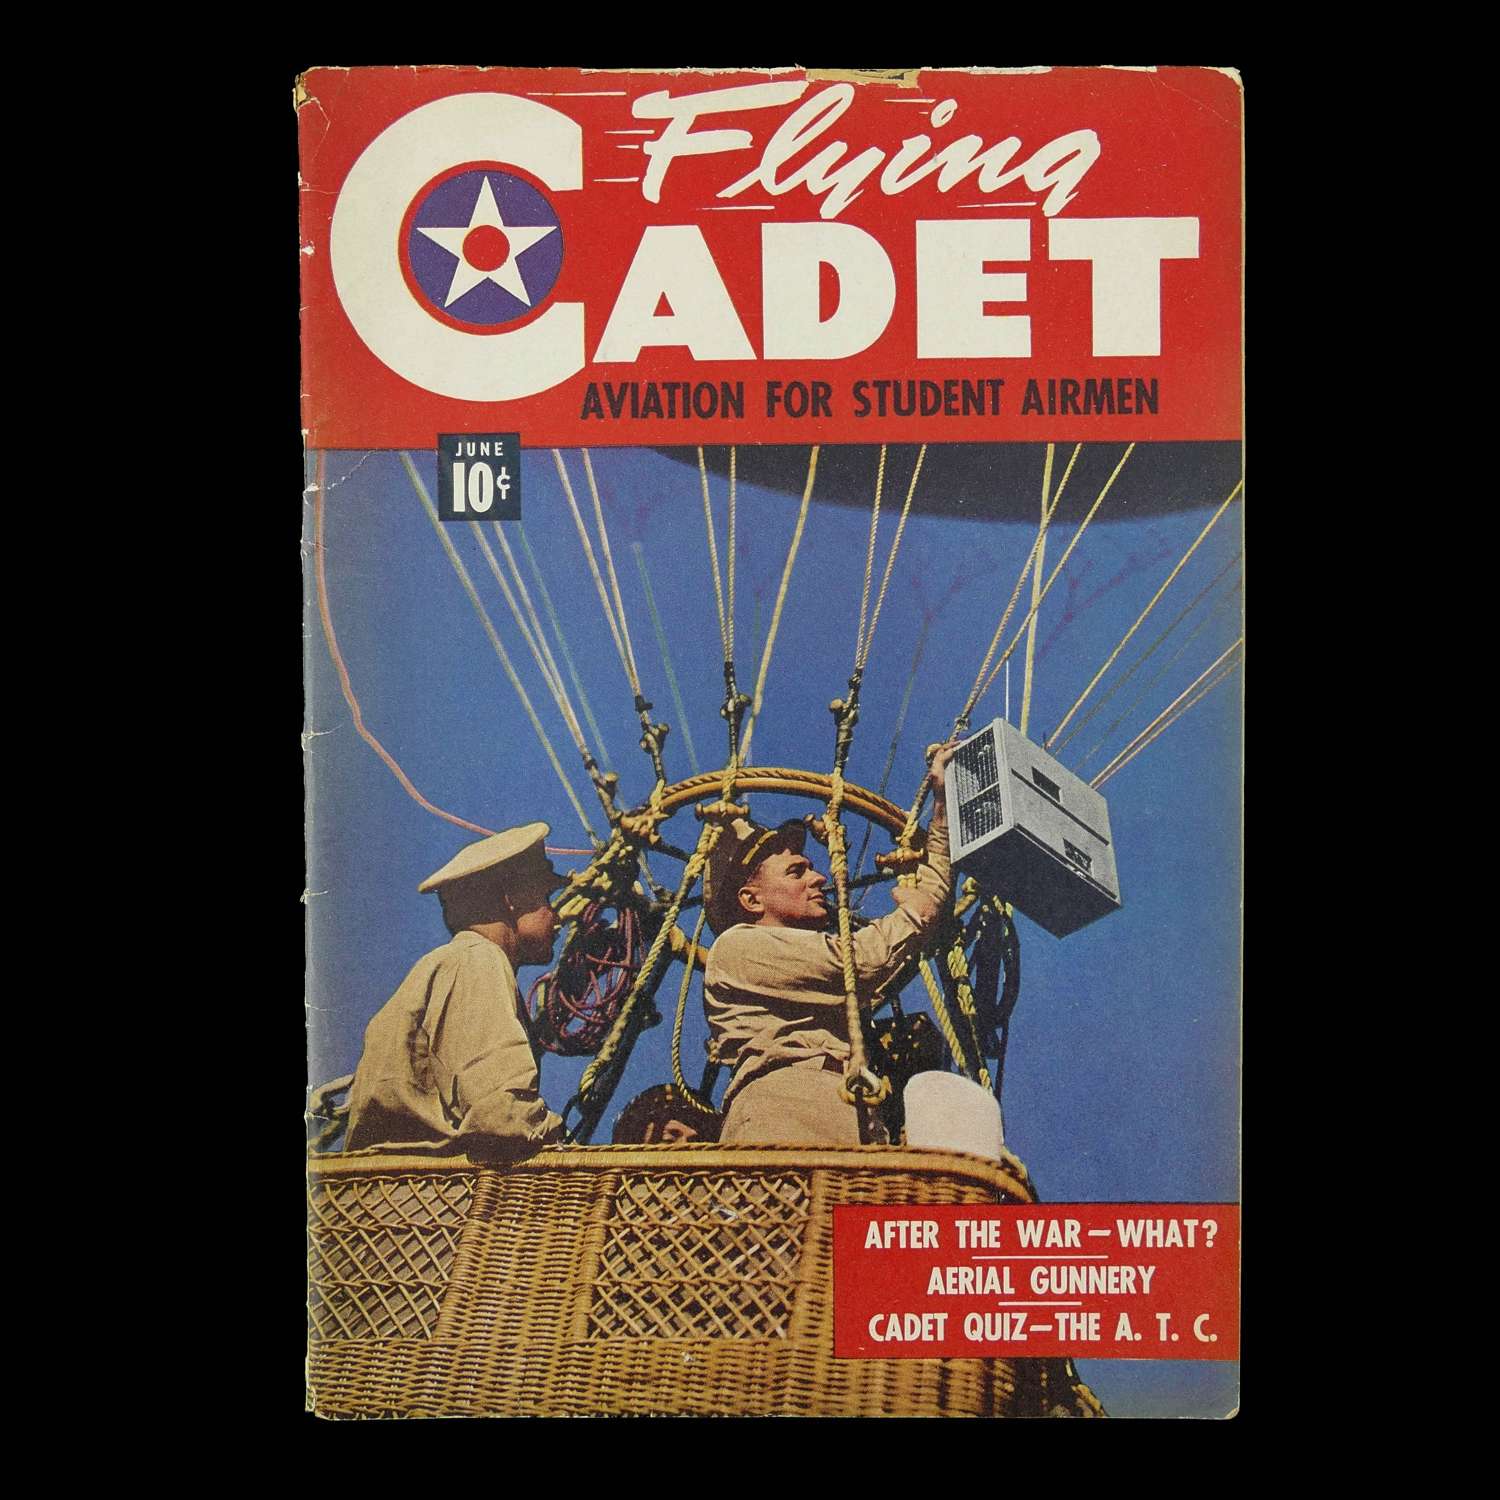 Flying Cadet magazine c.1943